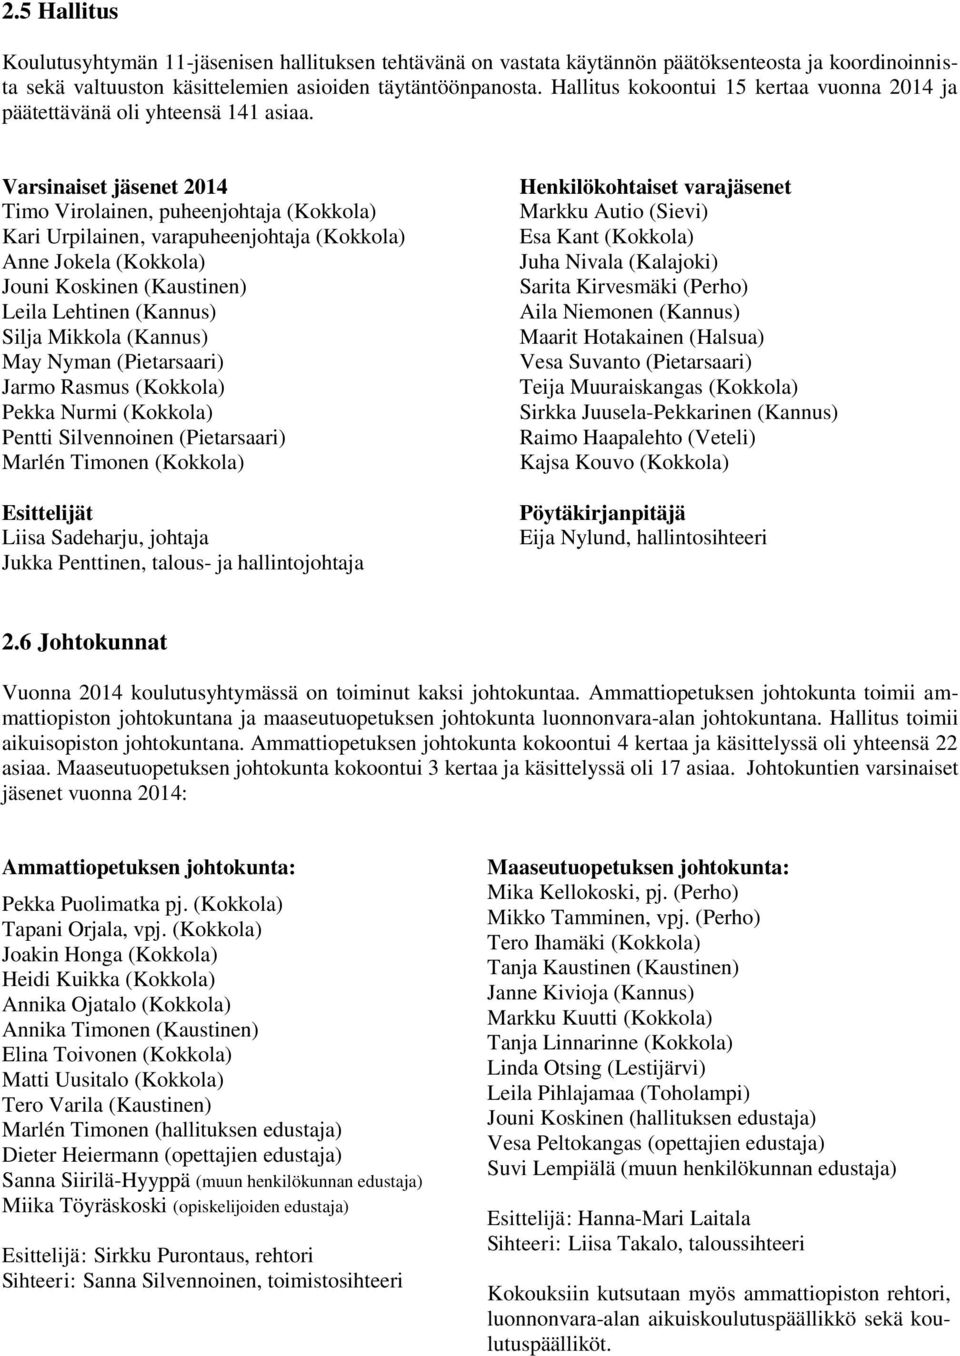 Varsinaiset jäsenet 2014 Timo Virolainen, puheenjohtaja (Kokkola) Kari Urpilainen, varapuheenjohtaja (Kokkola) Anne Jokela (Kokkola) Jouni Koskinen (Kaustinen) Leila Lehtinen (Kannus) Silja Mikkola